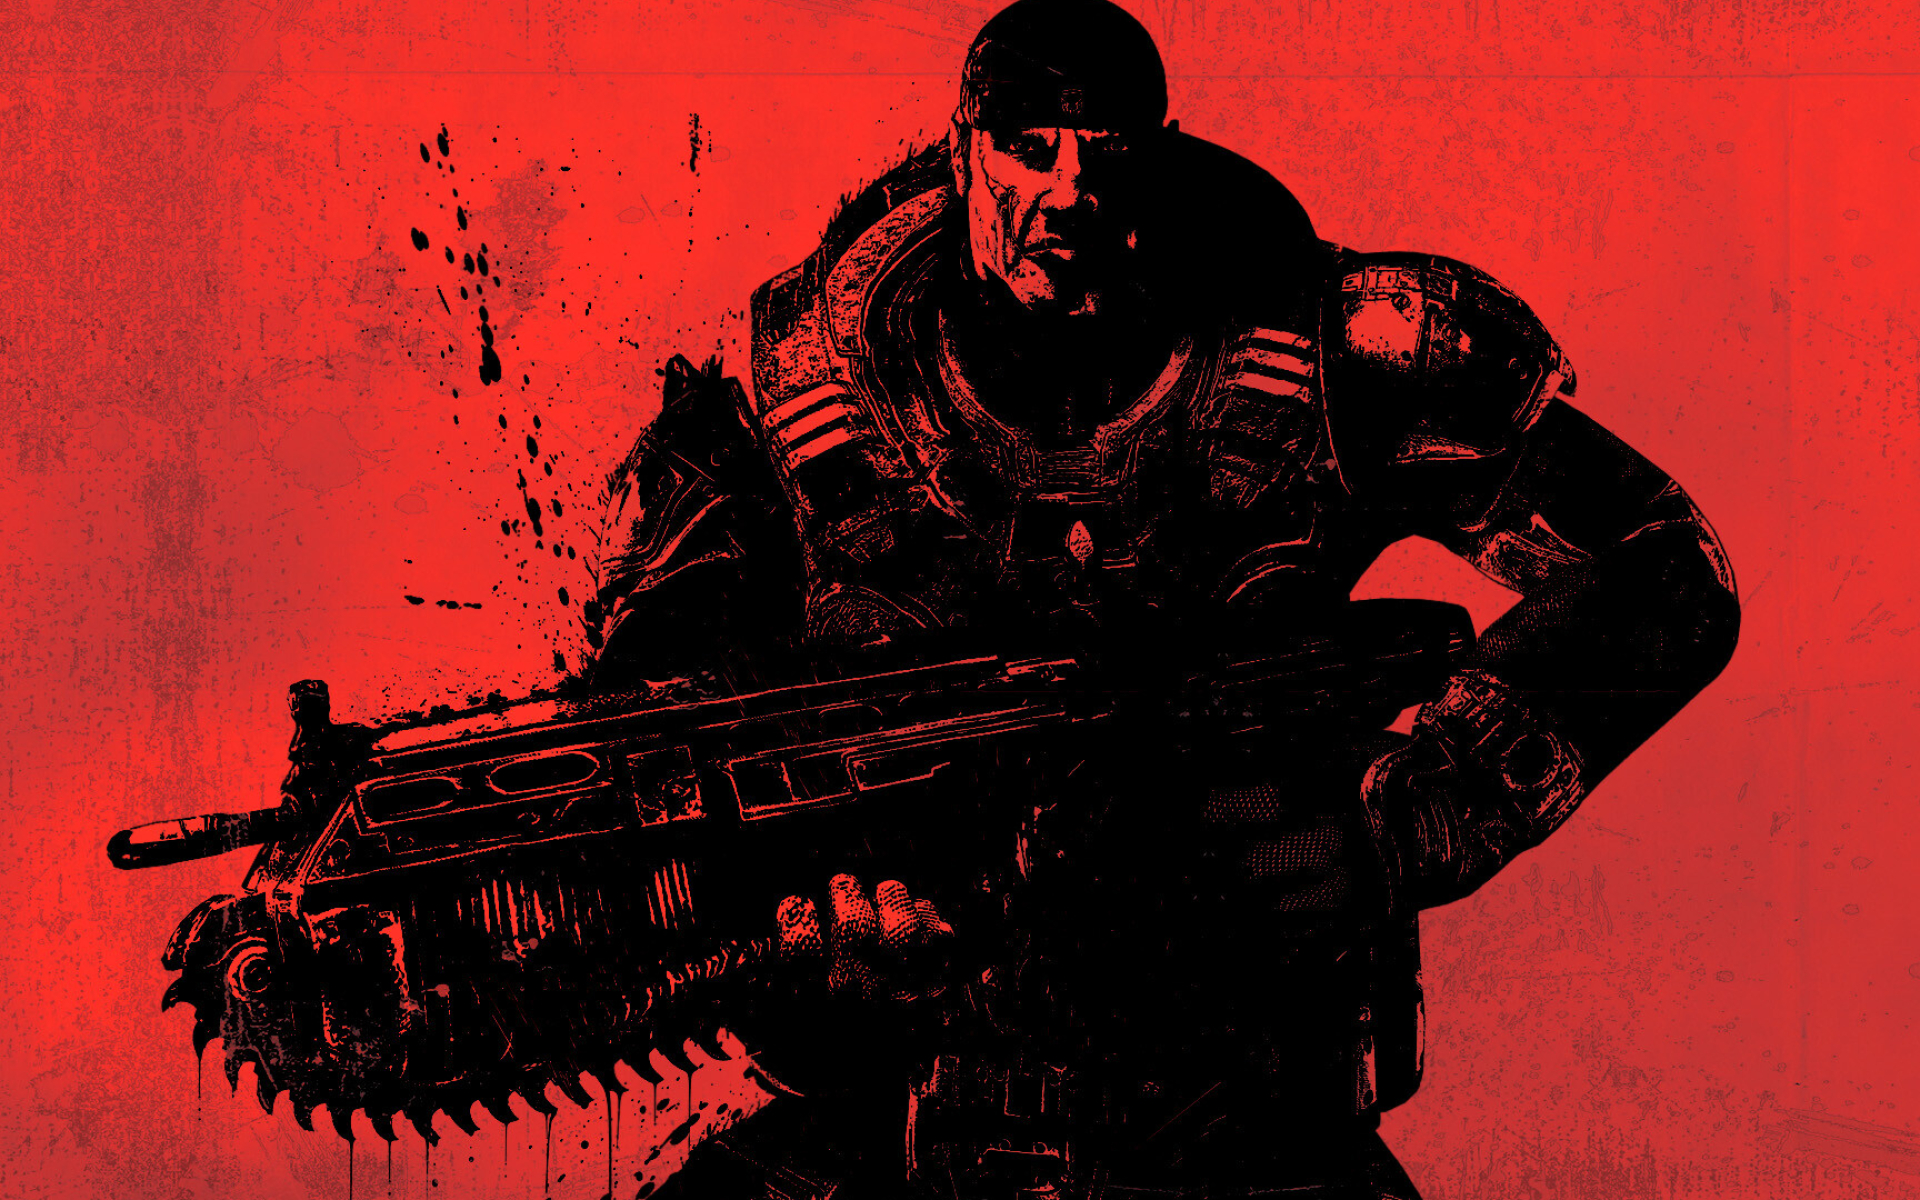 Gears of War: Marcus Fenix, Mark 2 Lancer Assault Rifle, Emergence Day, Video game art. 1920x1200 HD Wallpaper.